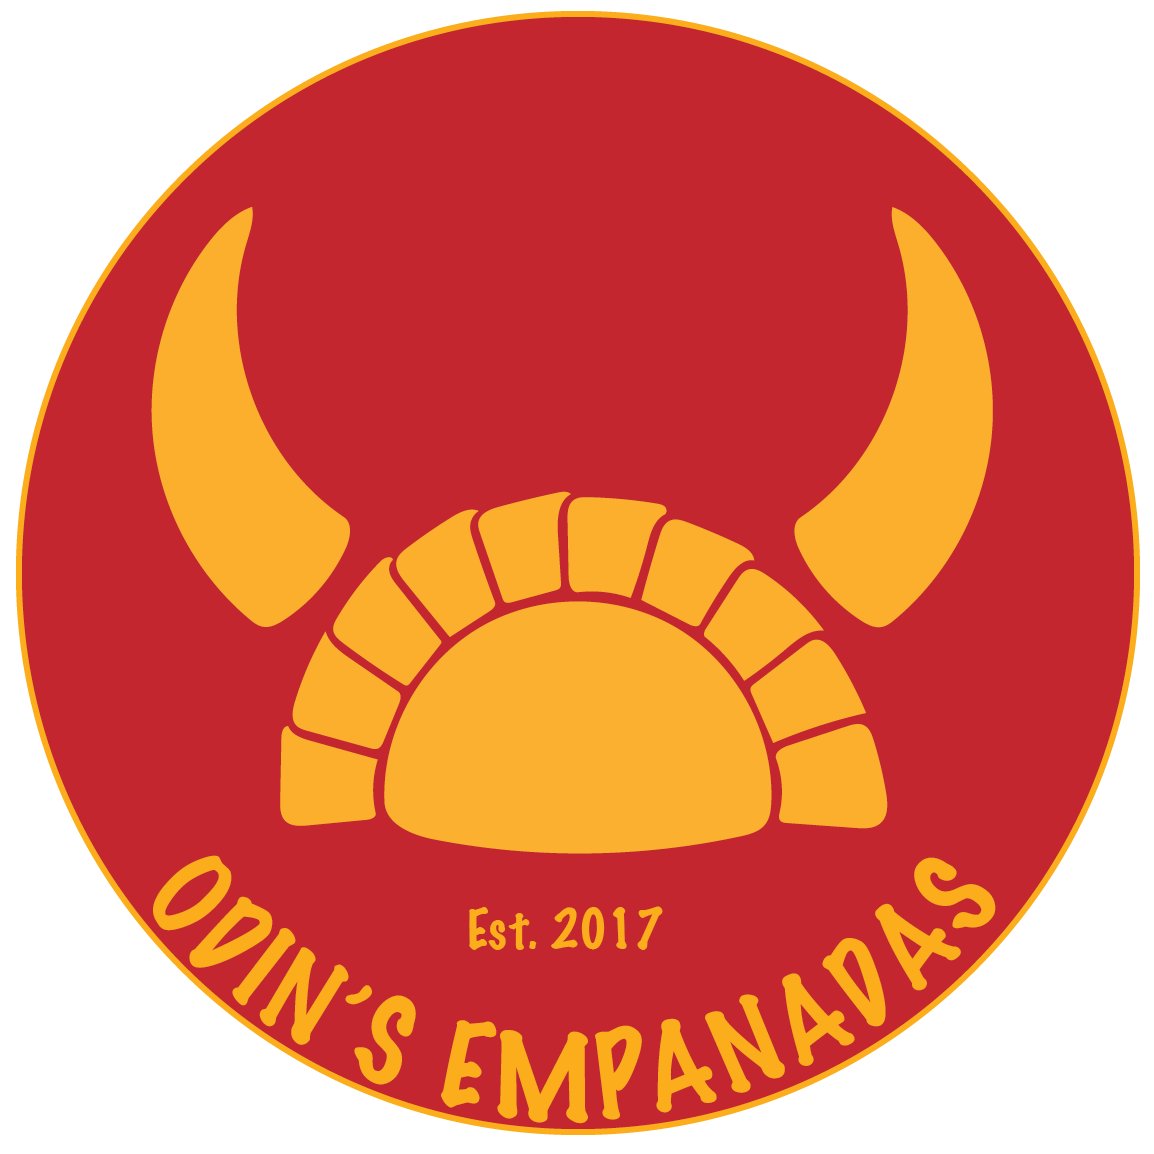 Hi, we make awesome Viking Empanadas.